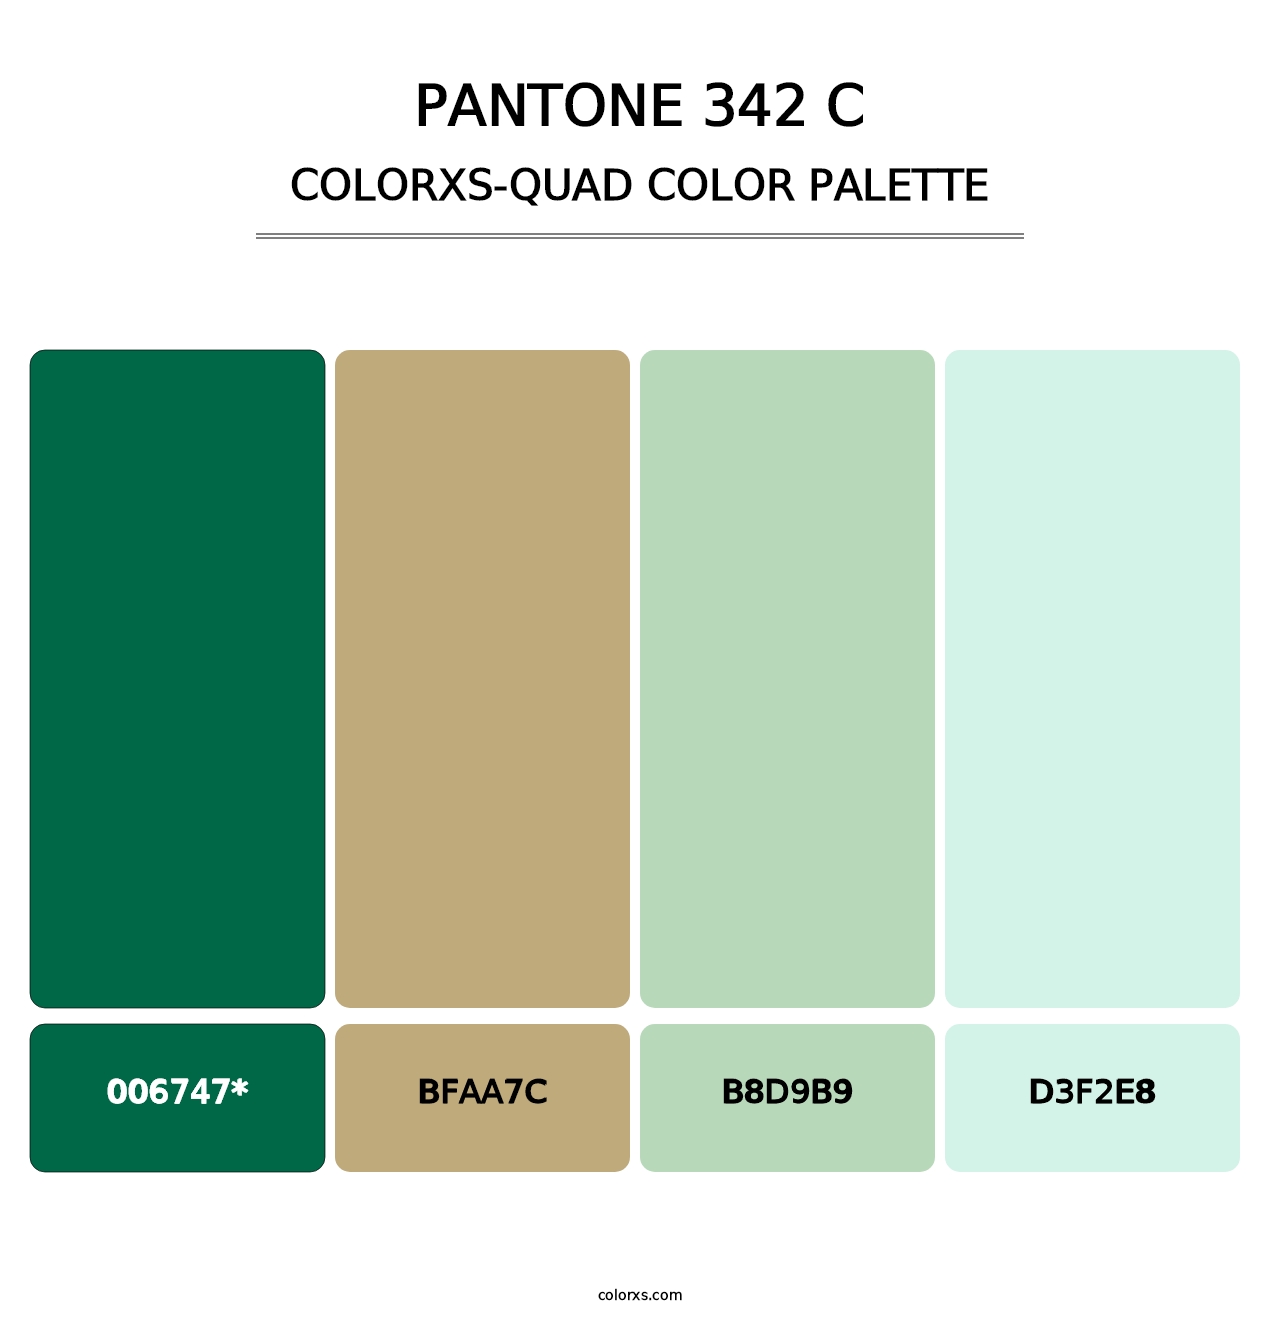 PANTONE 342 C - Colorxs Quad Palette